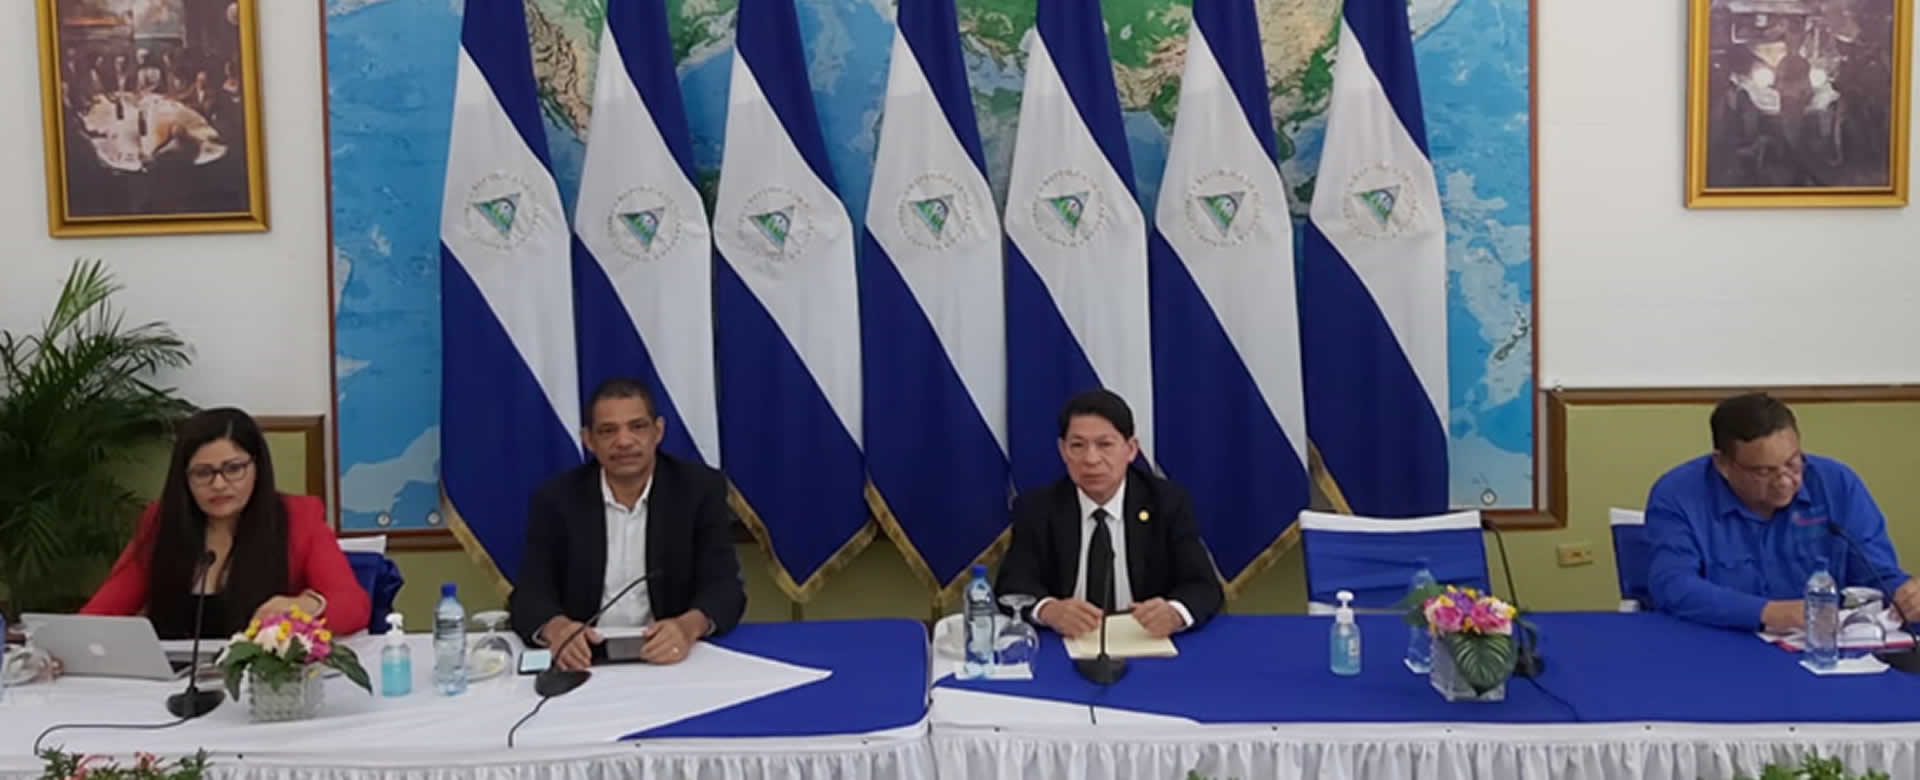 Nicaragua expone nuevas líneas productivas y de comercio a ONG’s